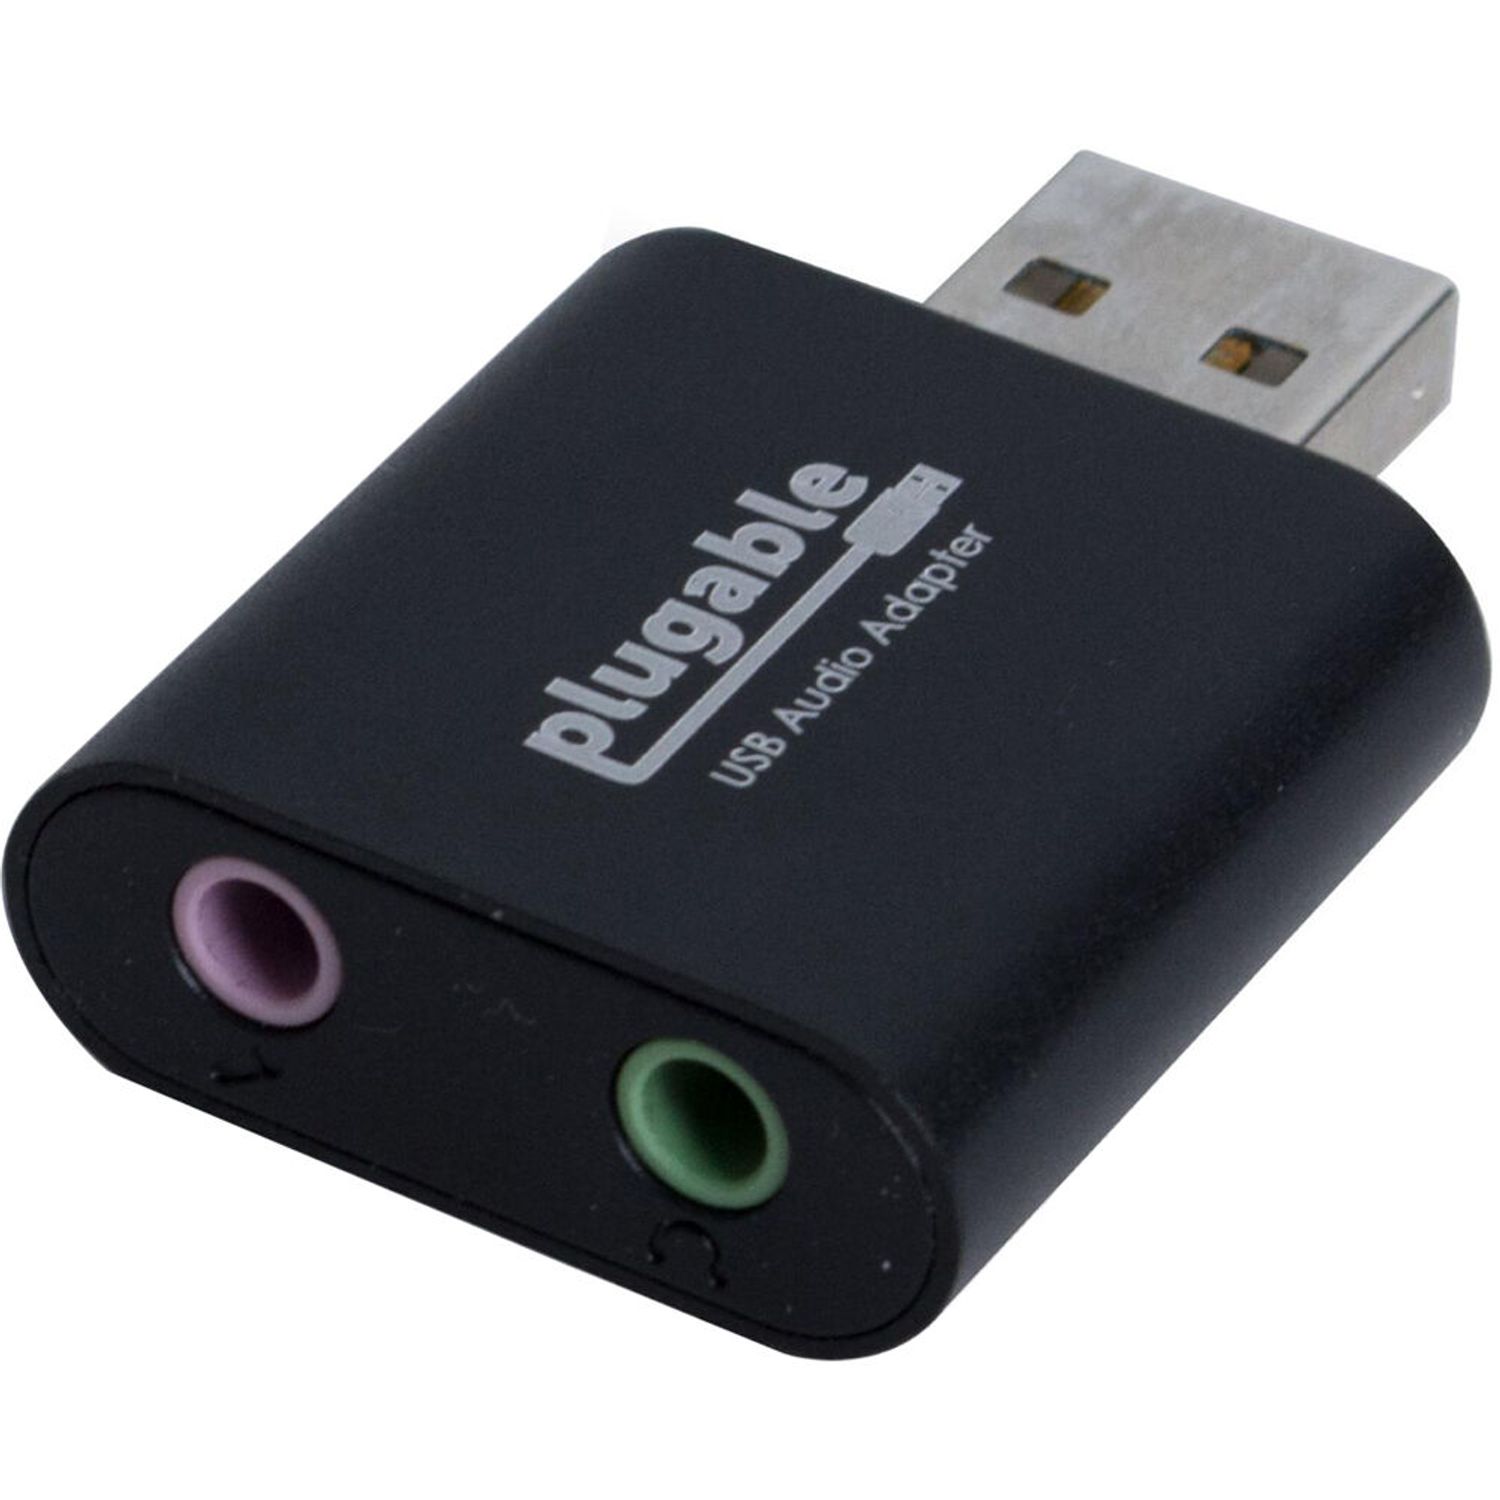  Plugable Cable adaptador USB C a USB con tecnología